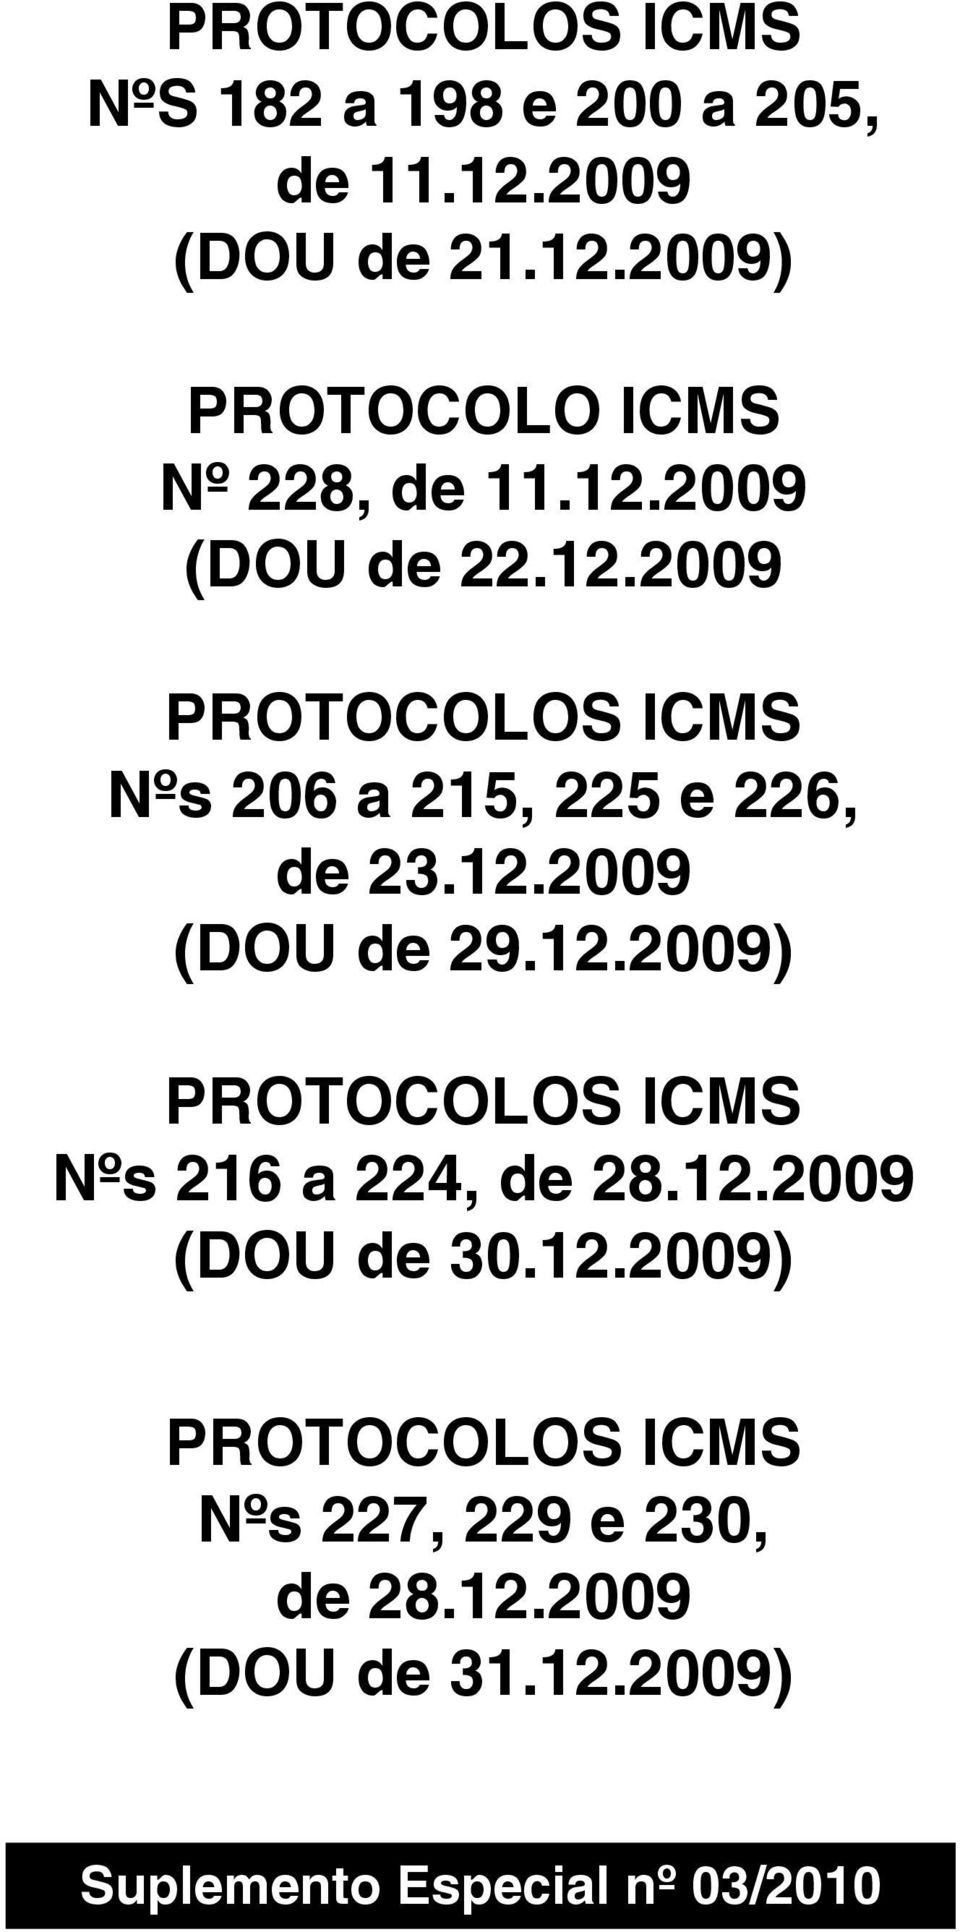 12.2009) PROTOCOLOS ICMS Nºs 216 a 224, de 28.12.2009 (DOU de 30.12.2009) PROTOCOLOS ICMS Nºs 227, 229 e 230, de 28.